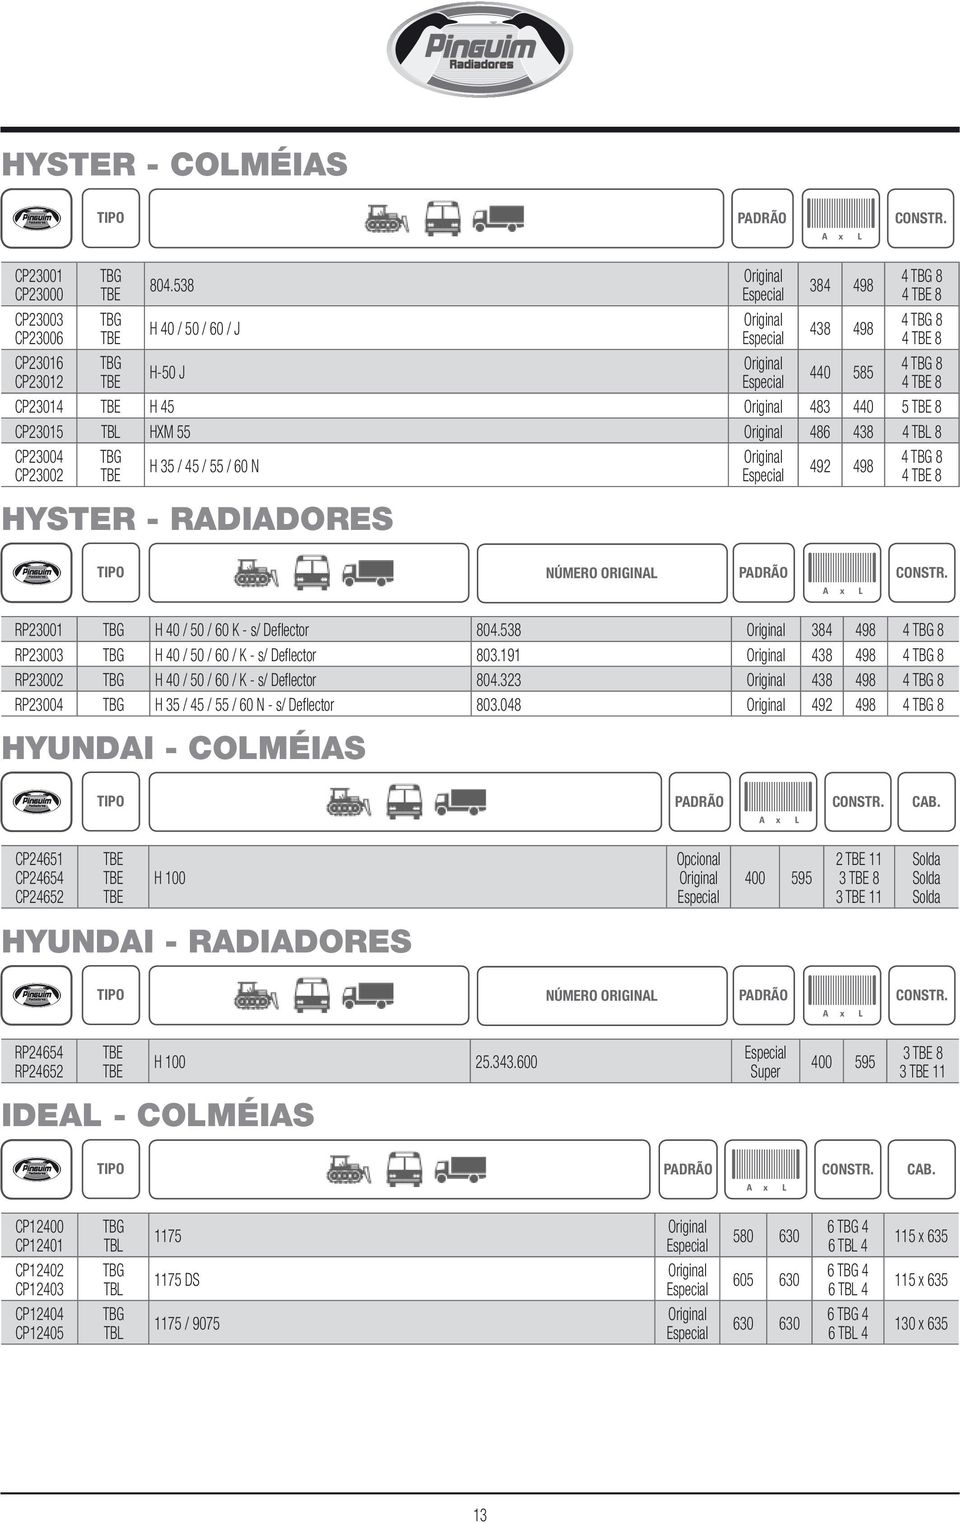 4 TBG 8 H 35 / 45 / 55 / 60 N 492 498 CP23002 4 8 HYSTER - RDIDORES NÚMERO ORIGIN PDRÃO RP23001 TBG H 40 / 50 / 60 K - s/ Deflector 804.